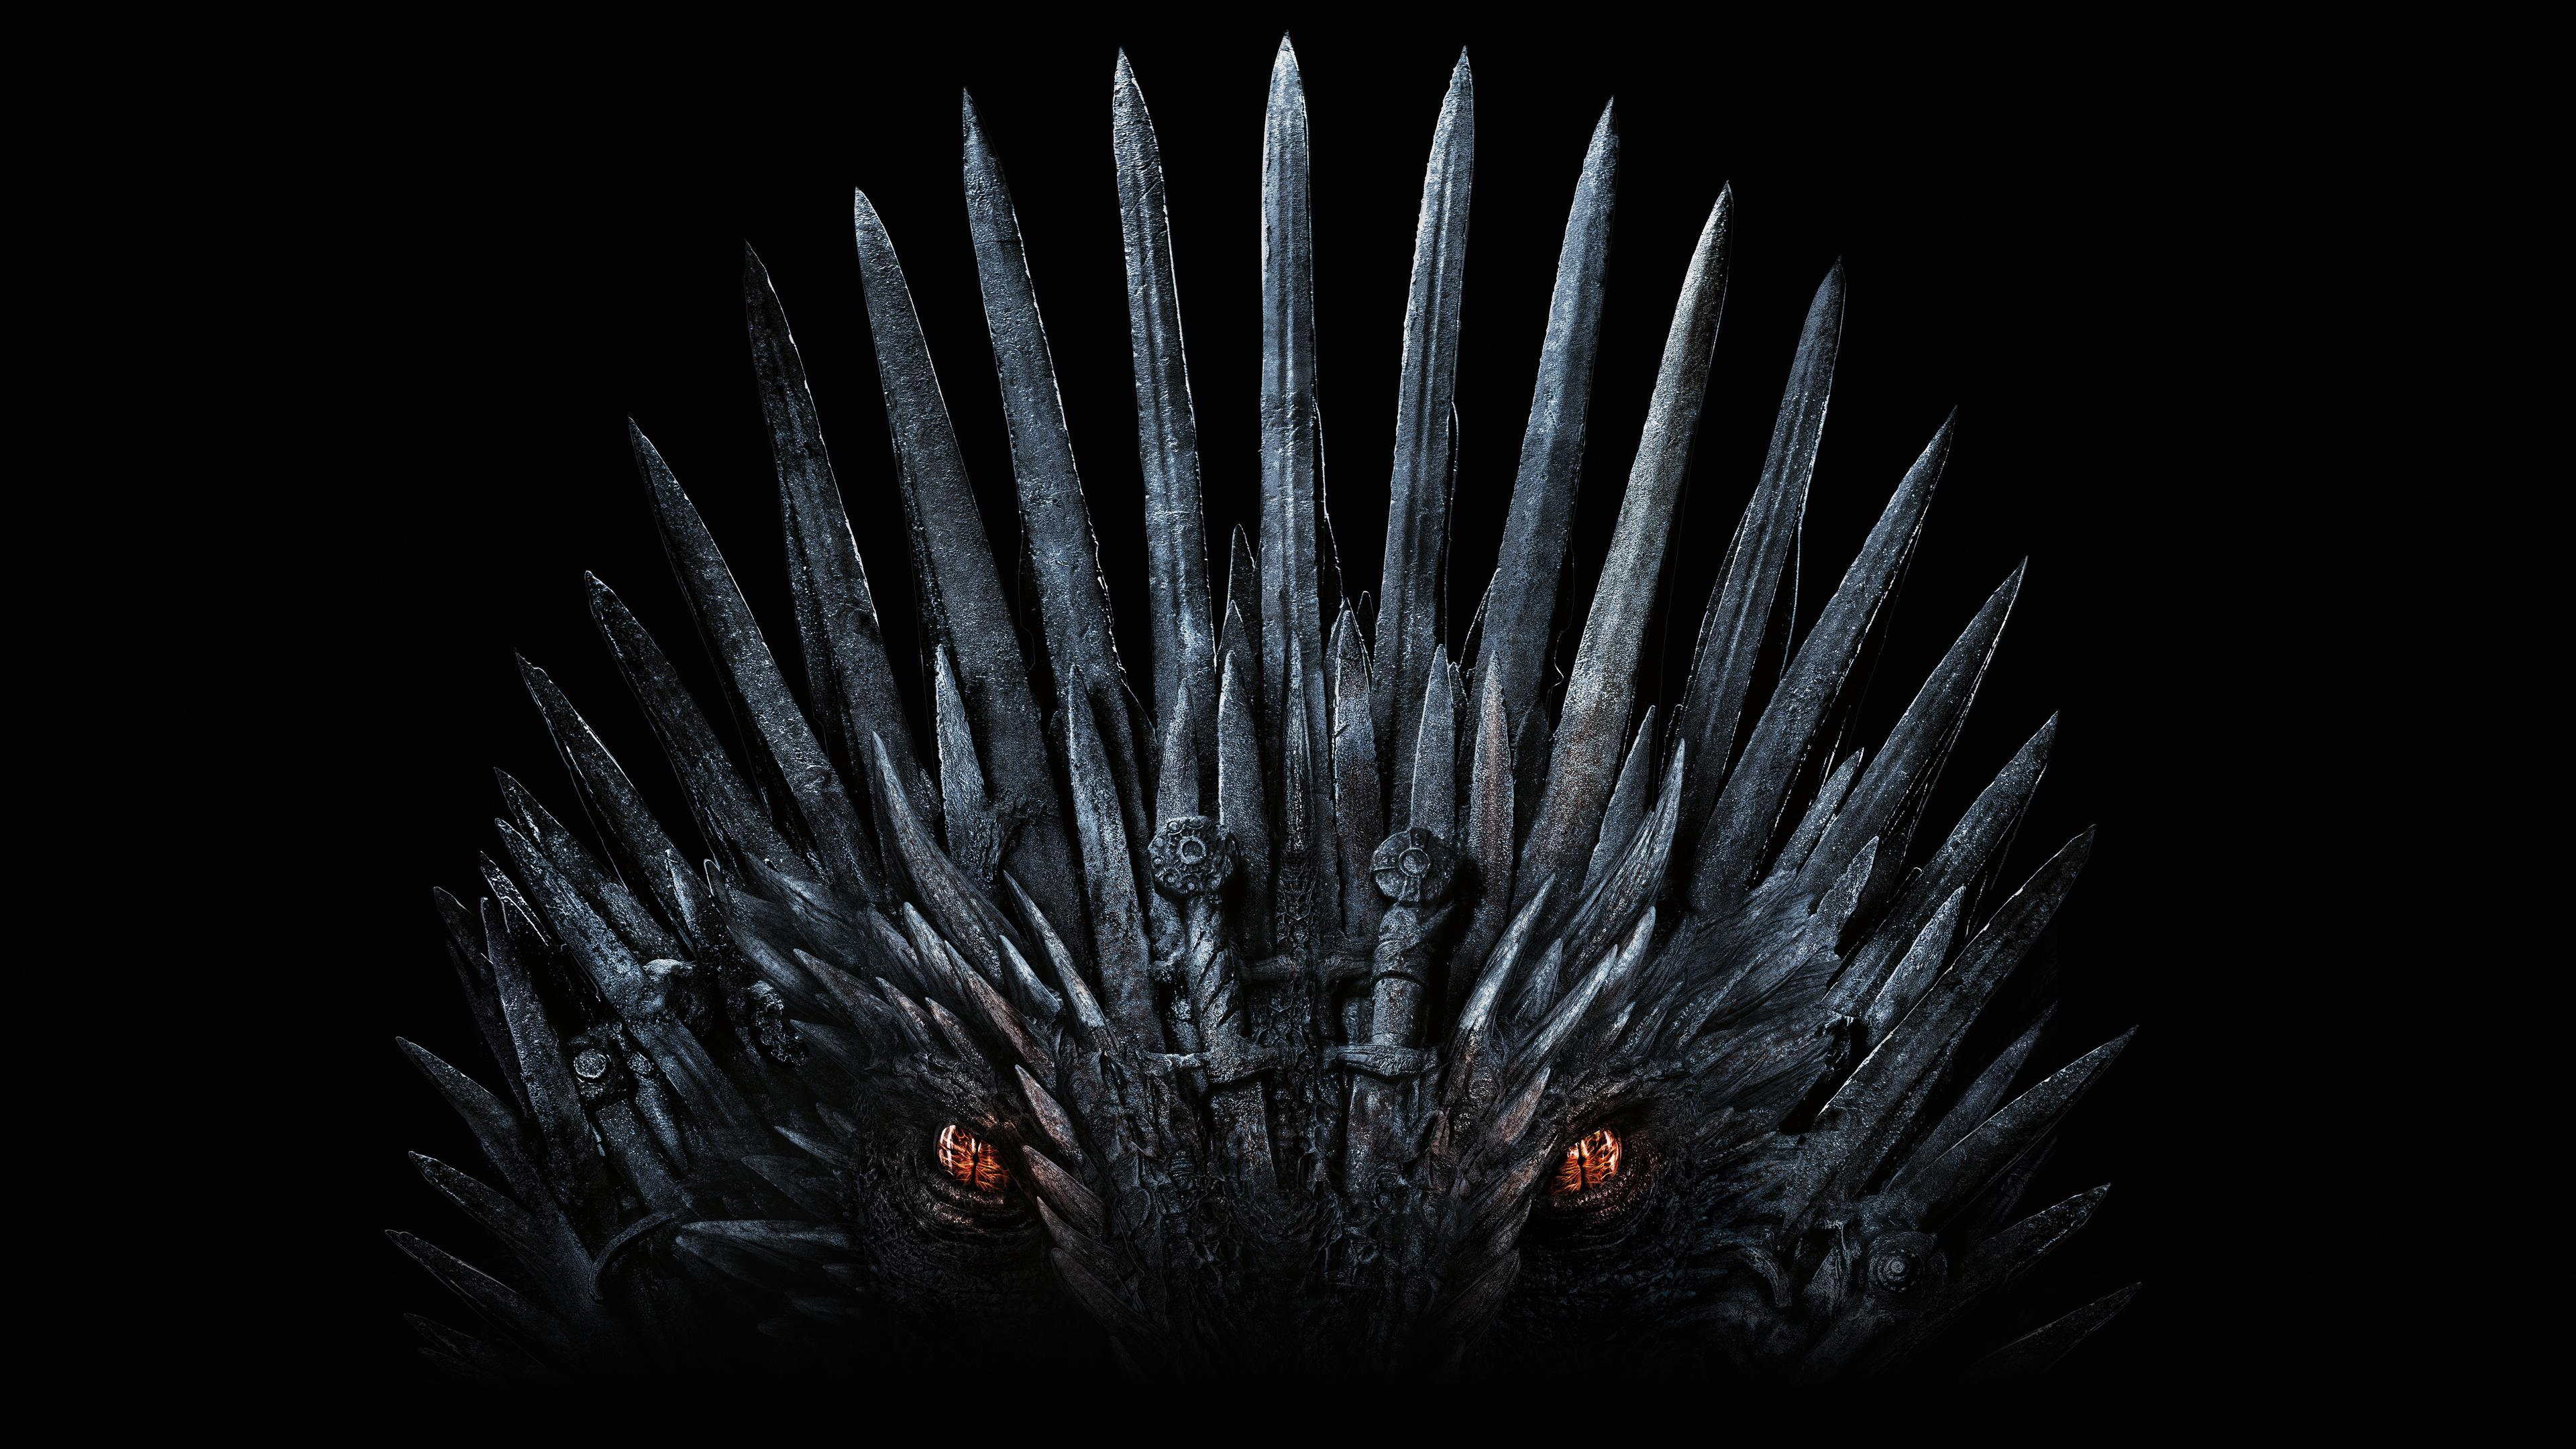 Juego de tronos': 35 cosas que nos gustaría ver en la octava y última  temporada - Serie HBO